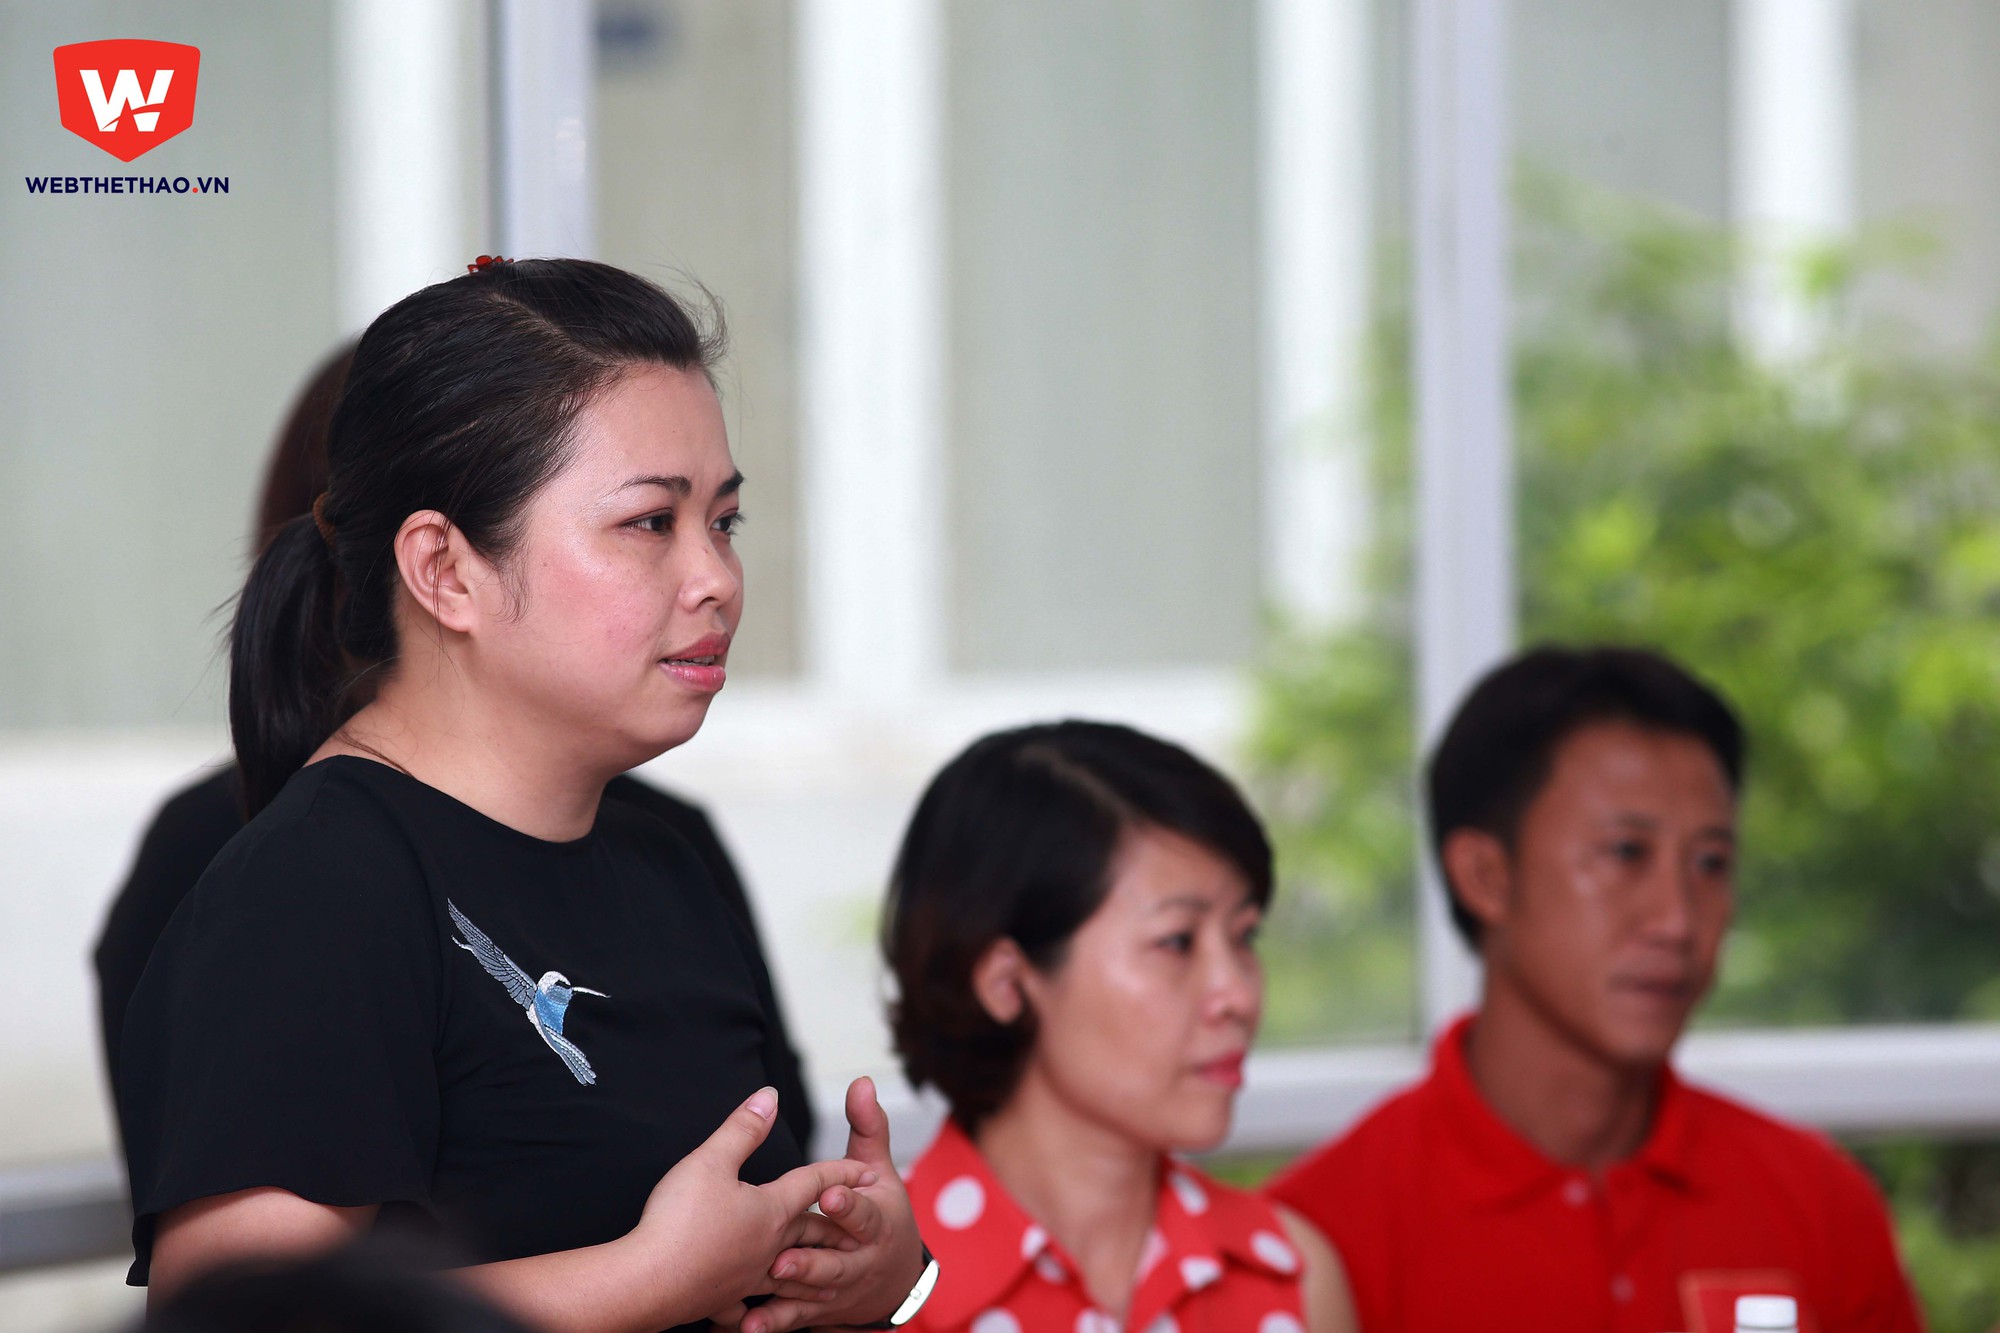 Bà Nguyễn Thu Hường, Phó TGĐ Công ty Cổ phần Thể thao 24h mong muốn các cầu thủ có sự chuẩn bị tốt nhất và gặt hái nhiều bài học từ chuyến đi. Ảnh: Hải Đăng.